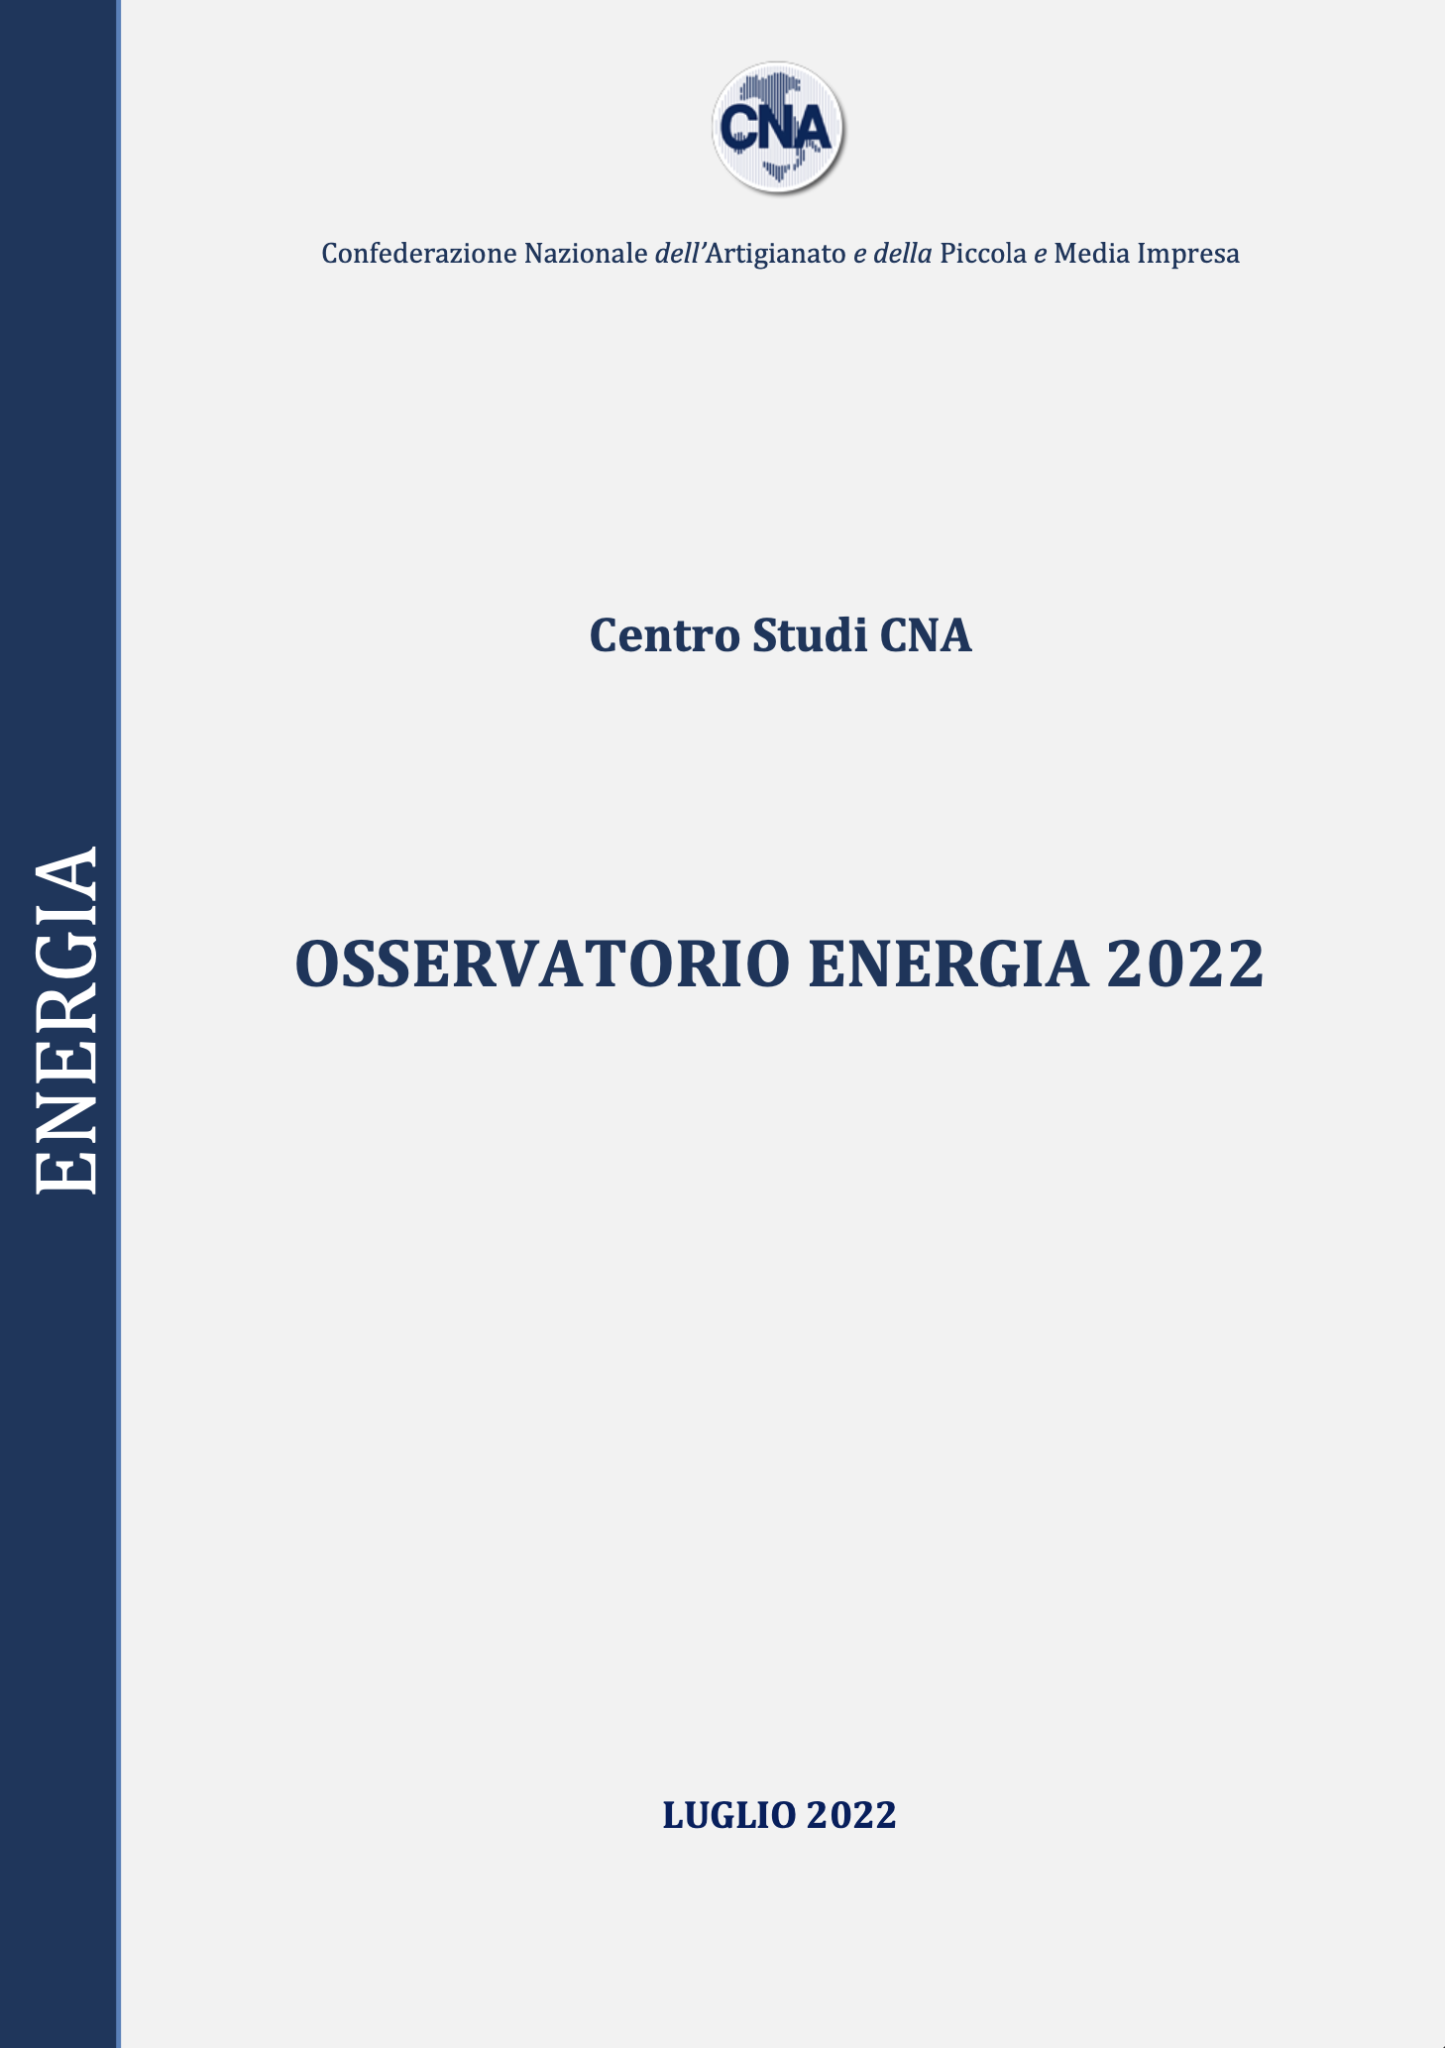 OSSERVATORIO ENERGIA 2022